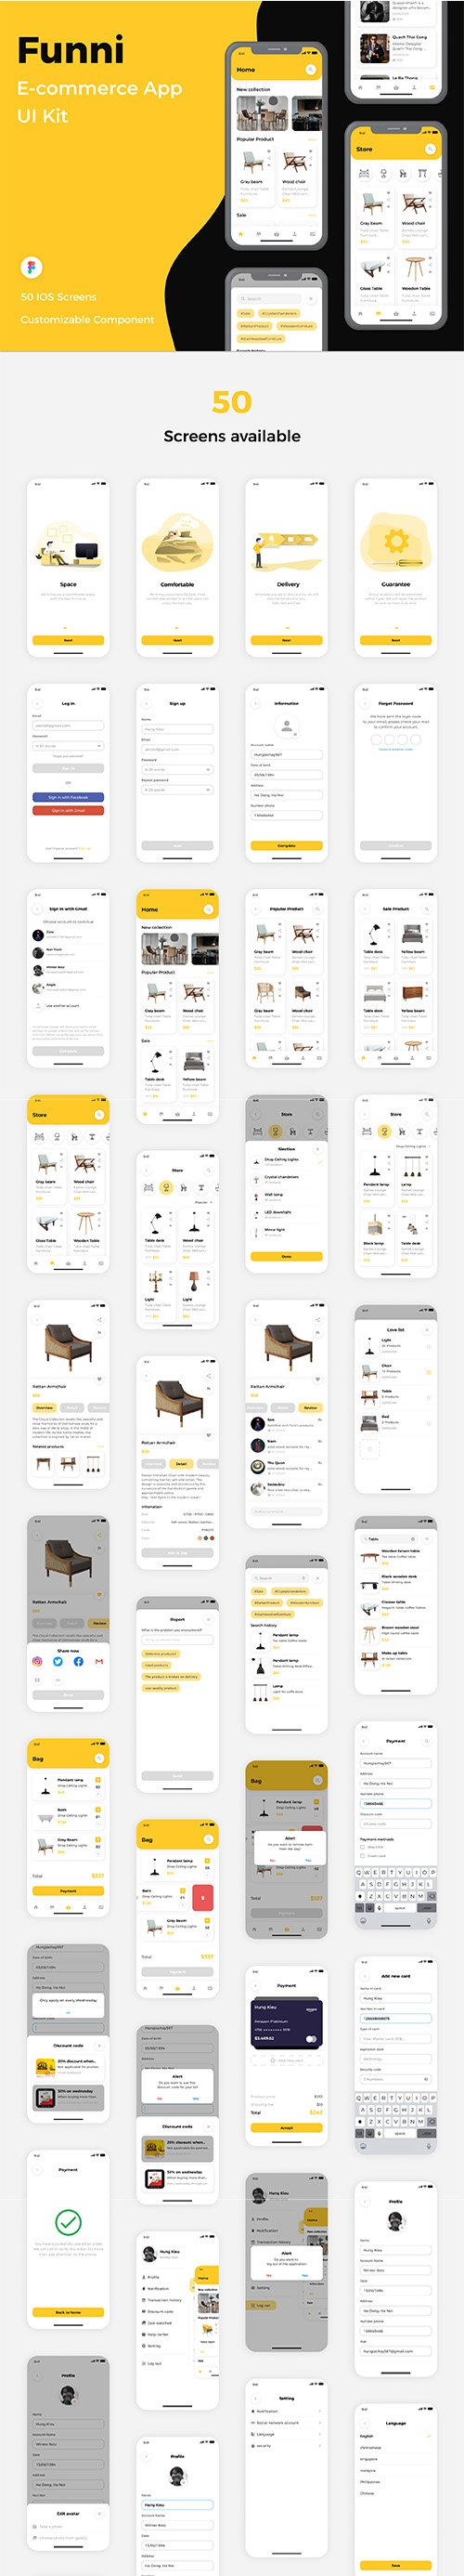 Funni - E-commerce App UI Kit